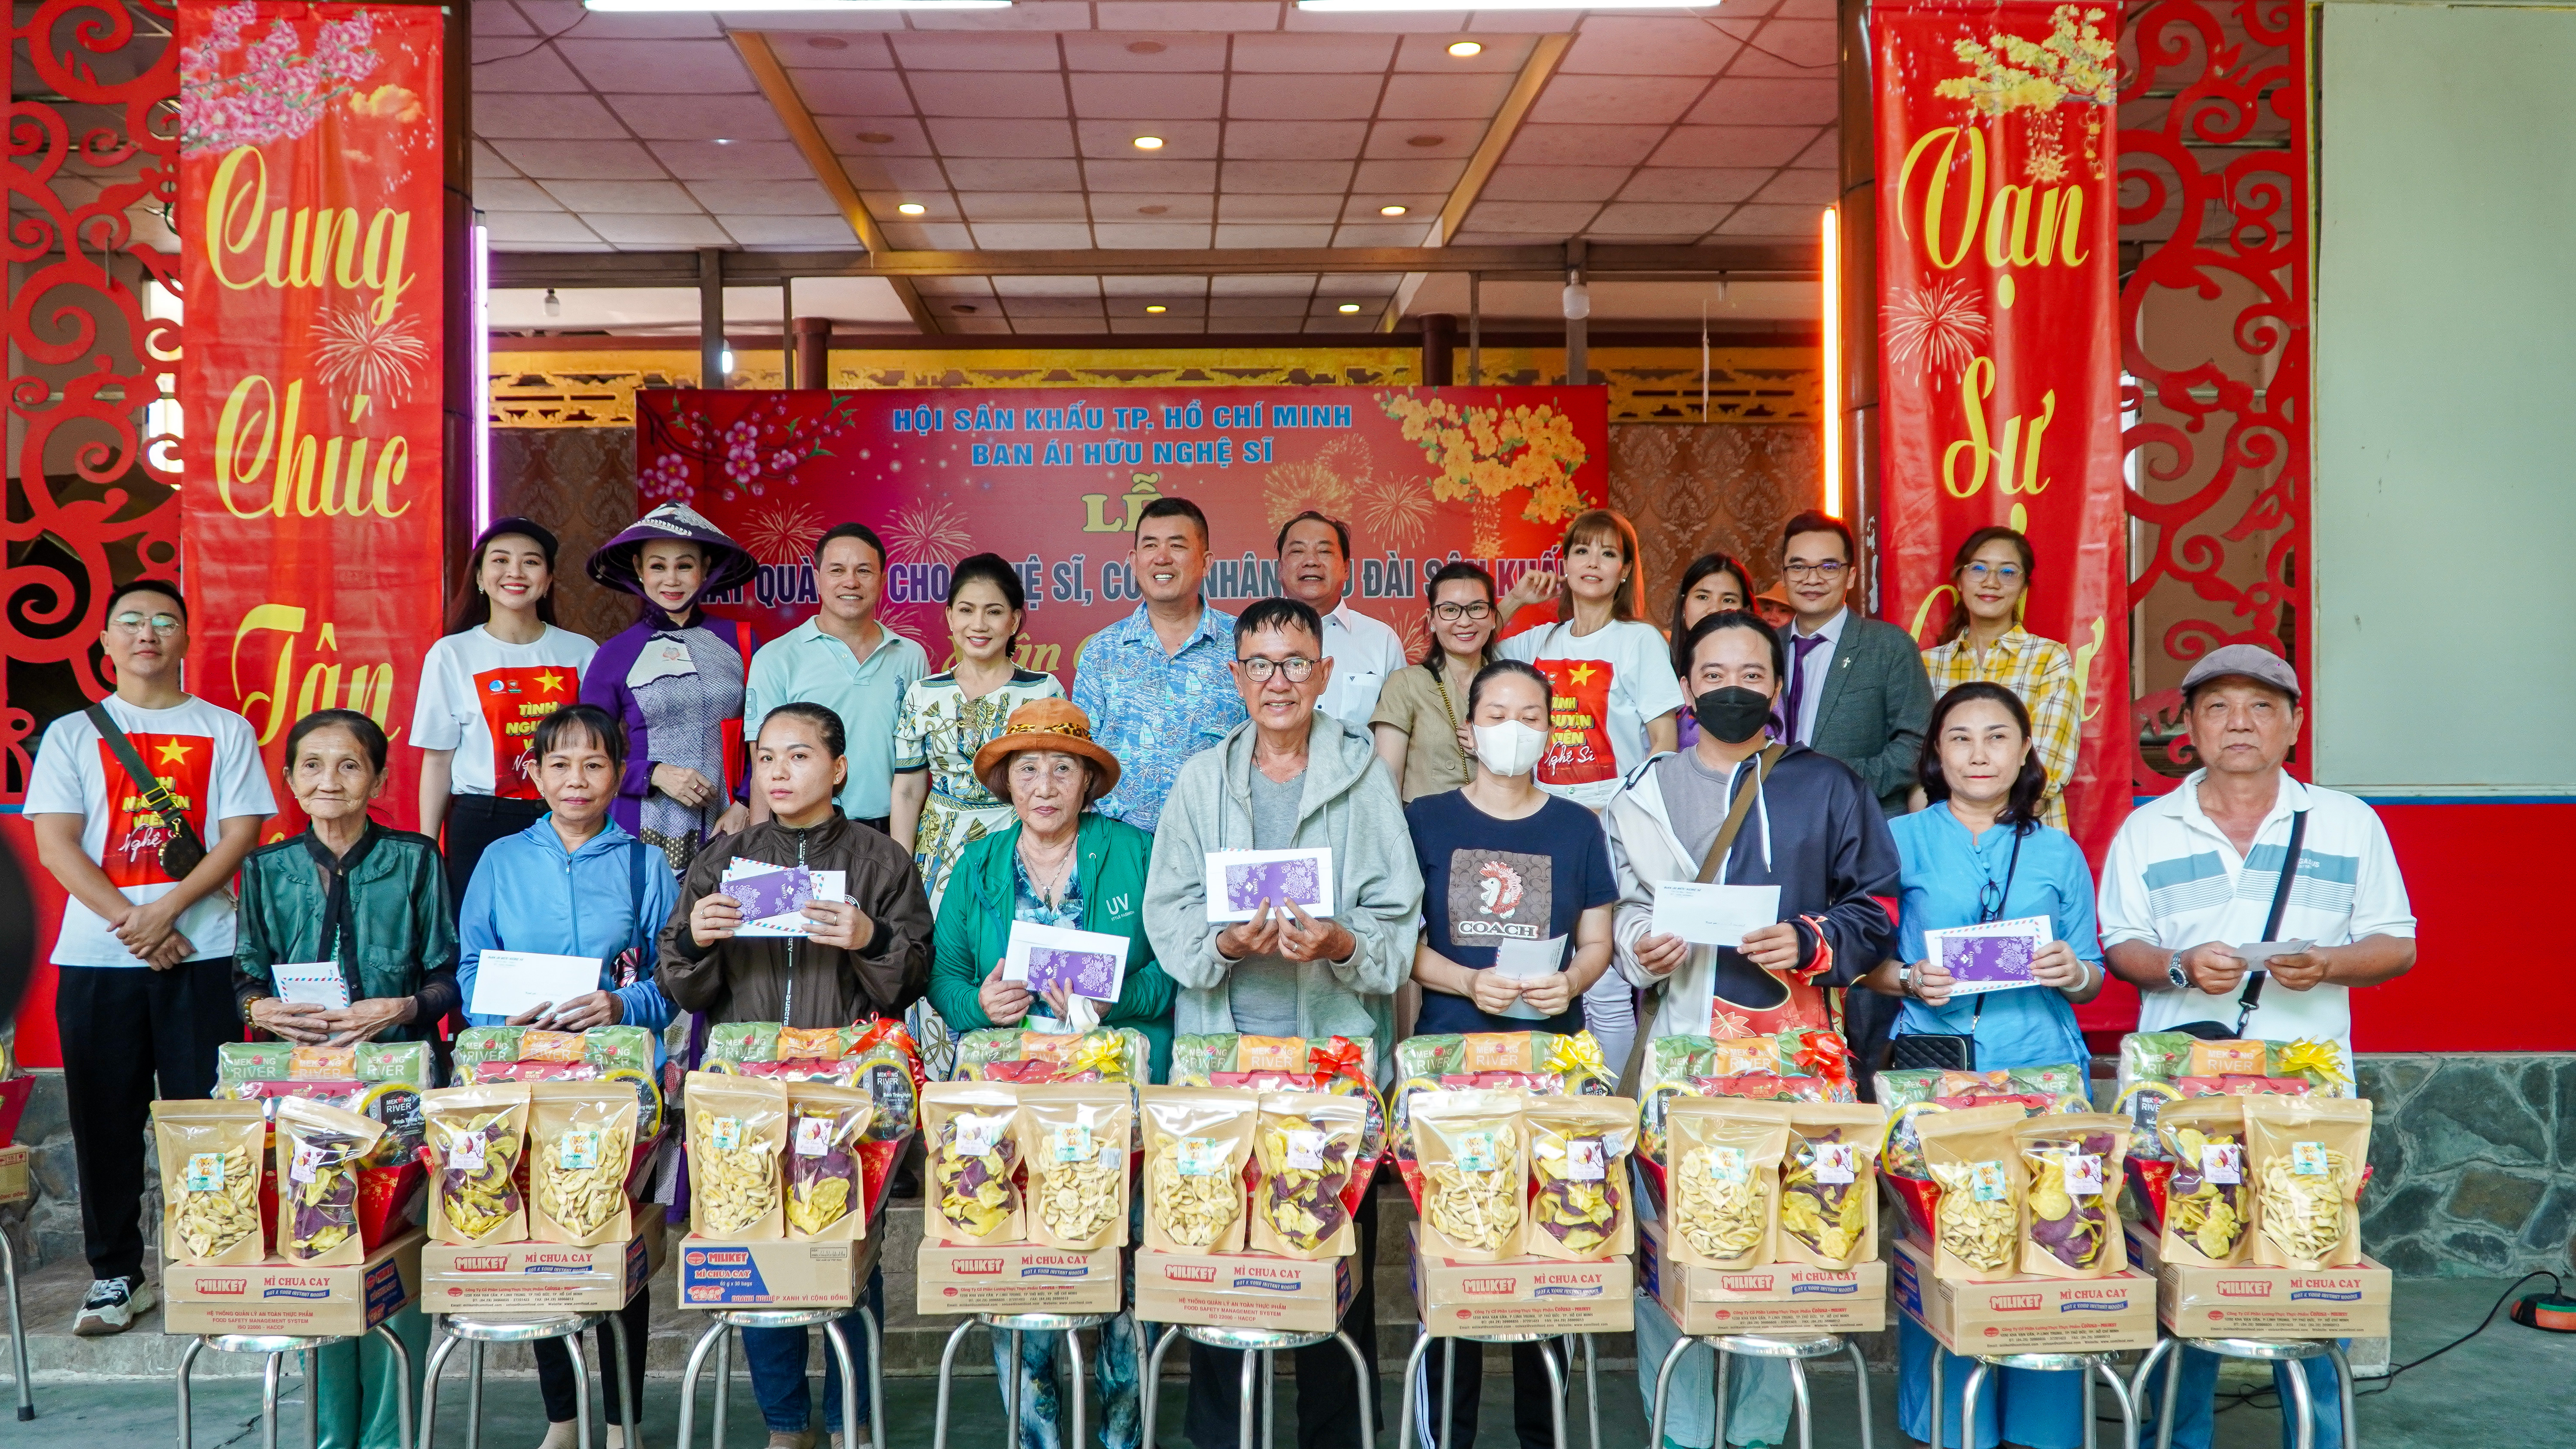 Mekong River đồng hành cùng Ban ái hữu nghệ sĩ – Hội Sân khấu TPHCM trao quà tết cho Nghệ sĩ